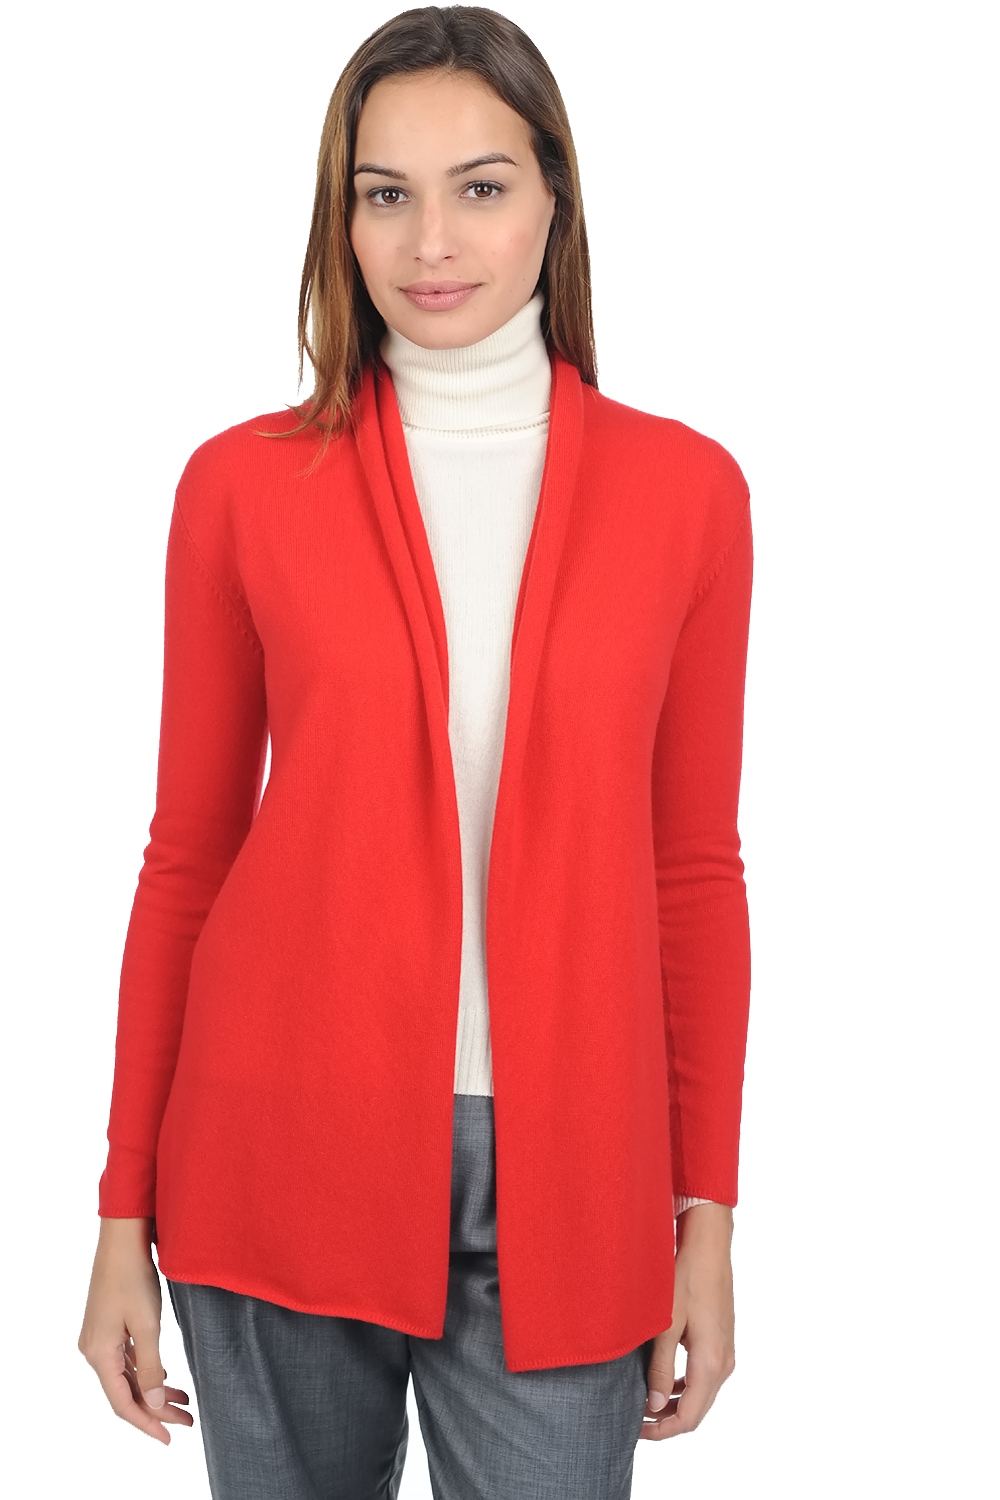 Cashmere ladies premium sweaters pucci premium tango red m